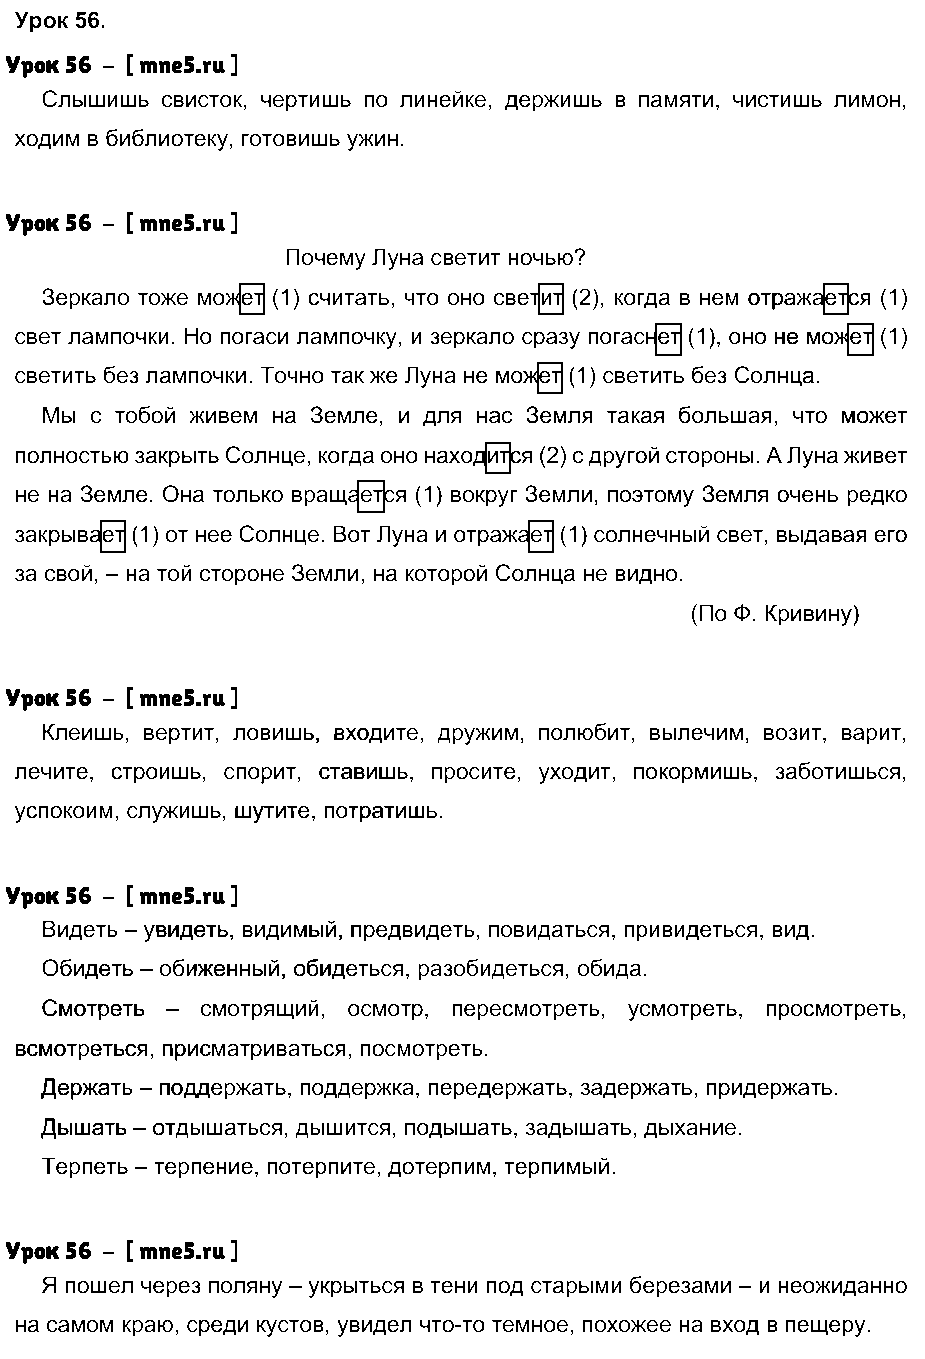 ГДЗ Русский язык 4 класс - Урок 56